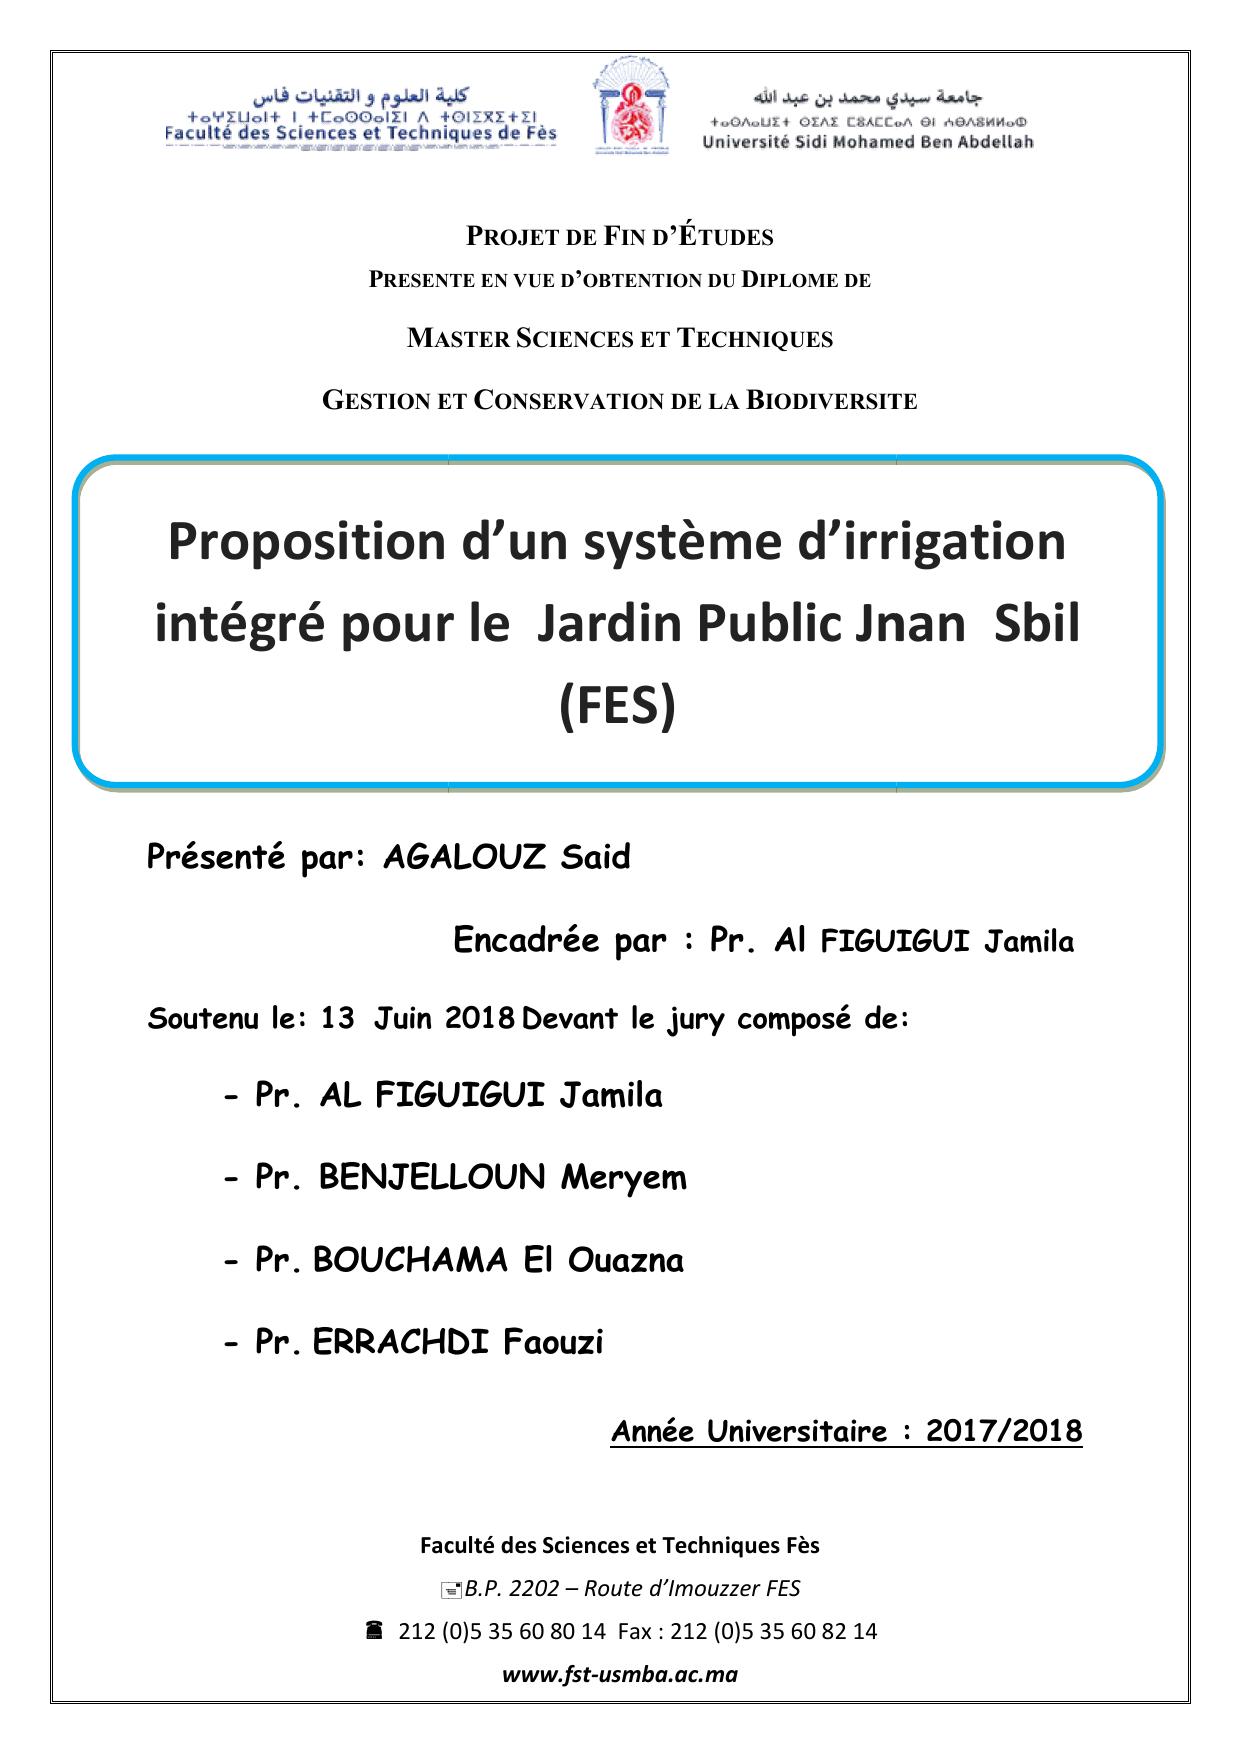 Proposition d’un système d’irrigation intégré pour le Jardin Public Jnan Sbil (Fès)